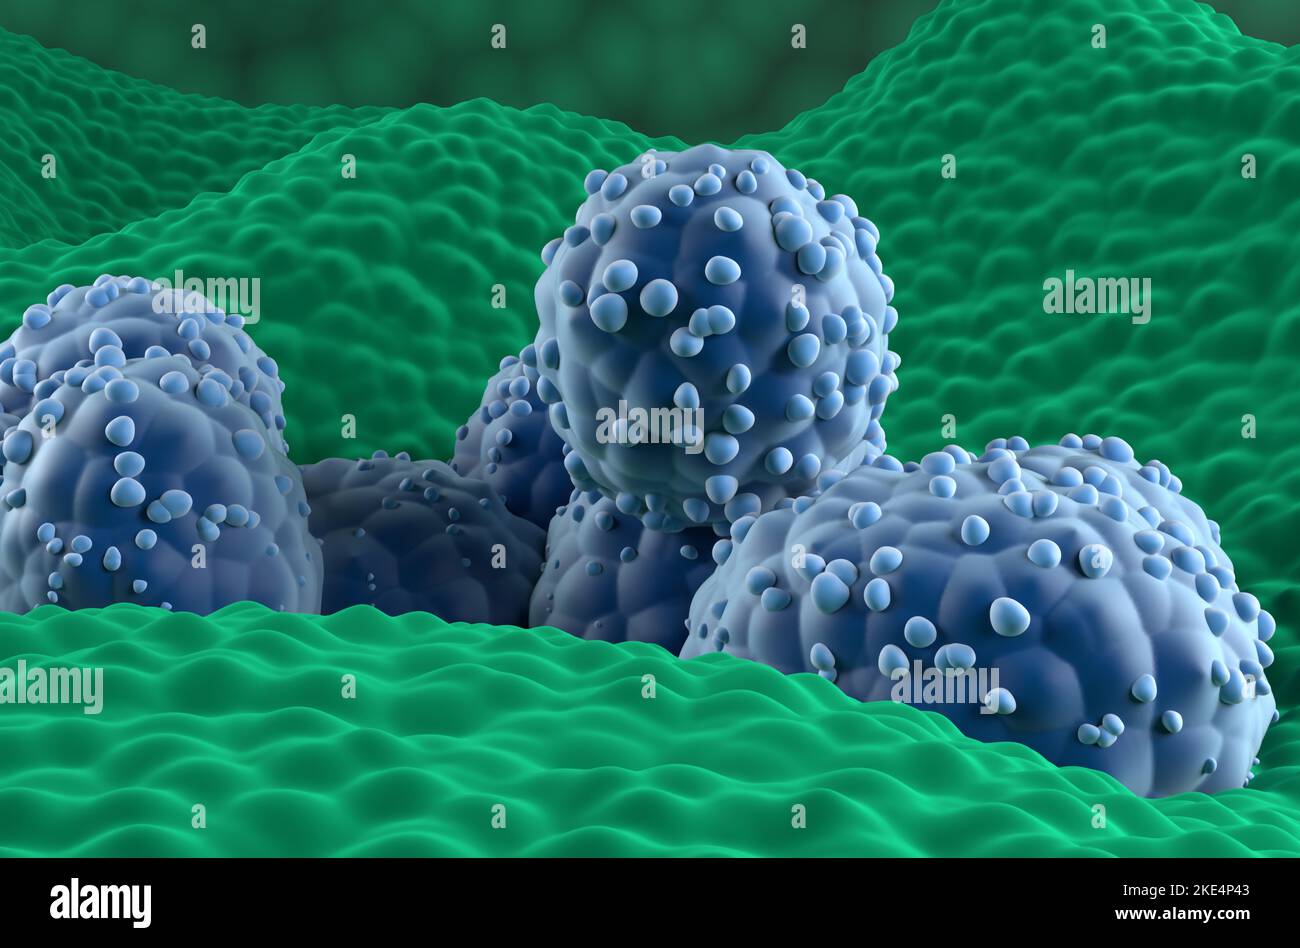 Prostatakrebszellen im prostatischen Drüsenepithel - Nahaufnahme Ansicht 3D Abbildung Stockfoto